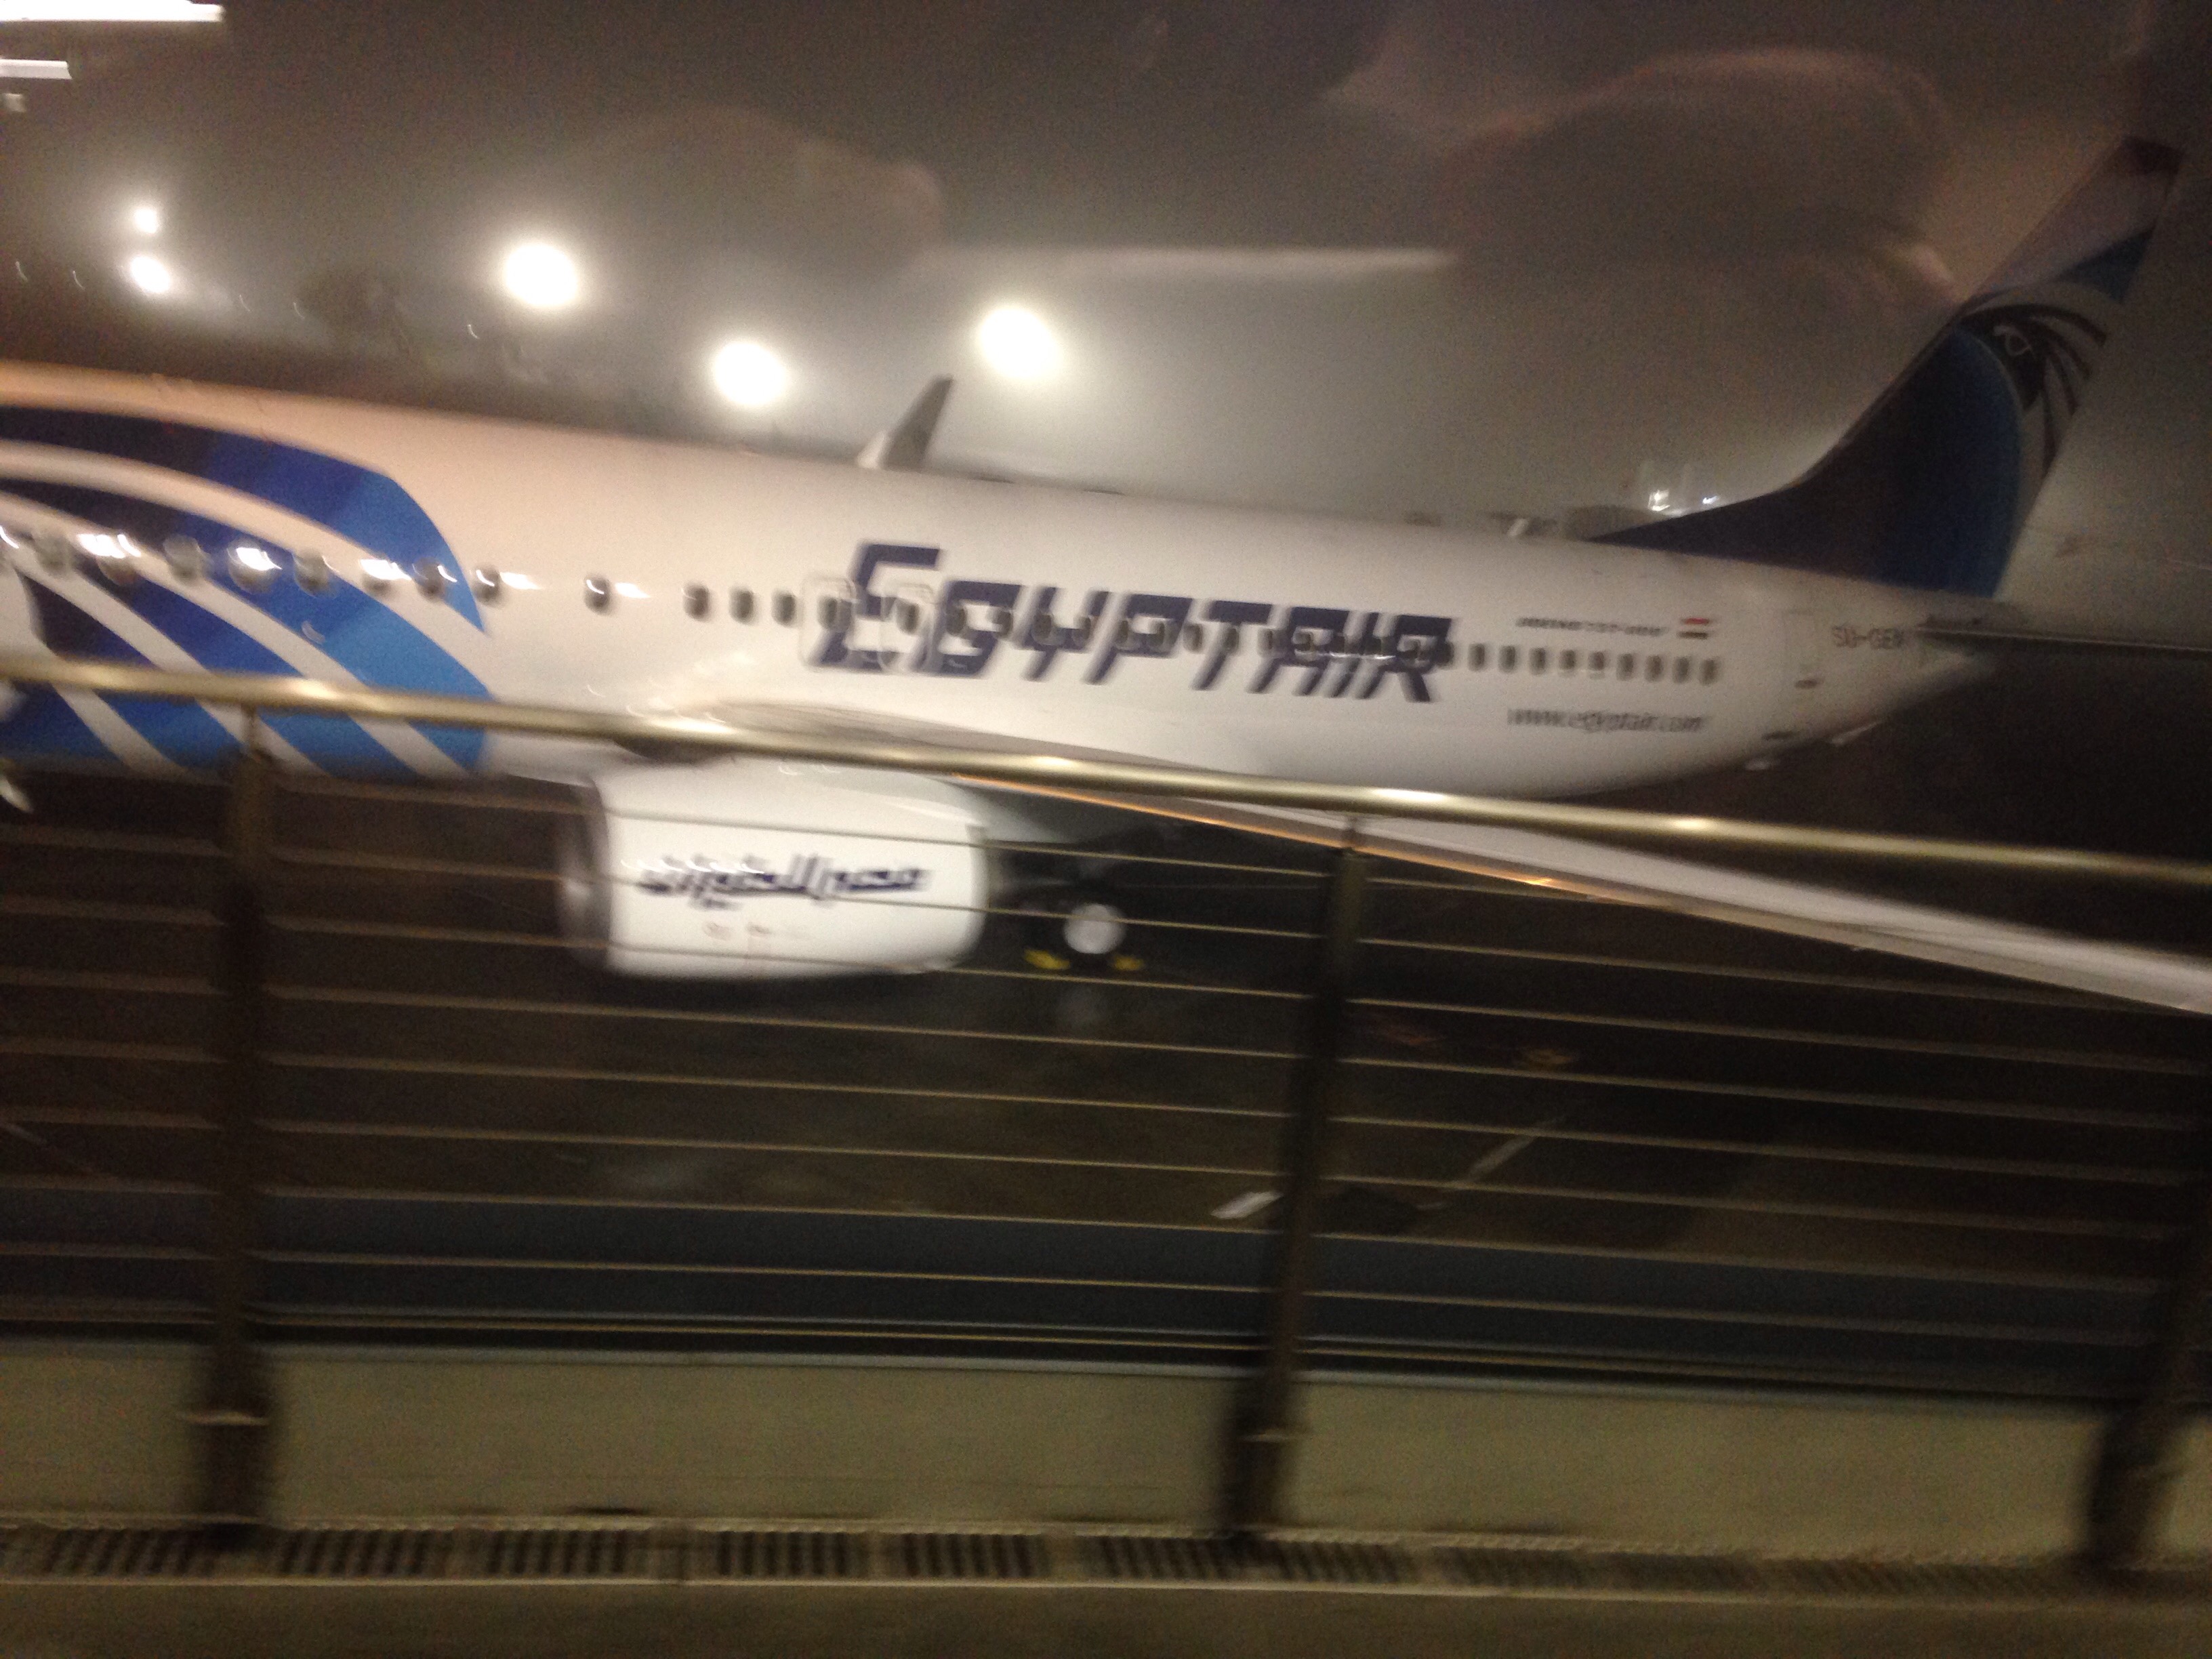 الصور الأولى للطائرة الجديدة لمصر للطيران (3)